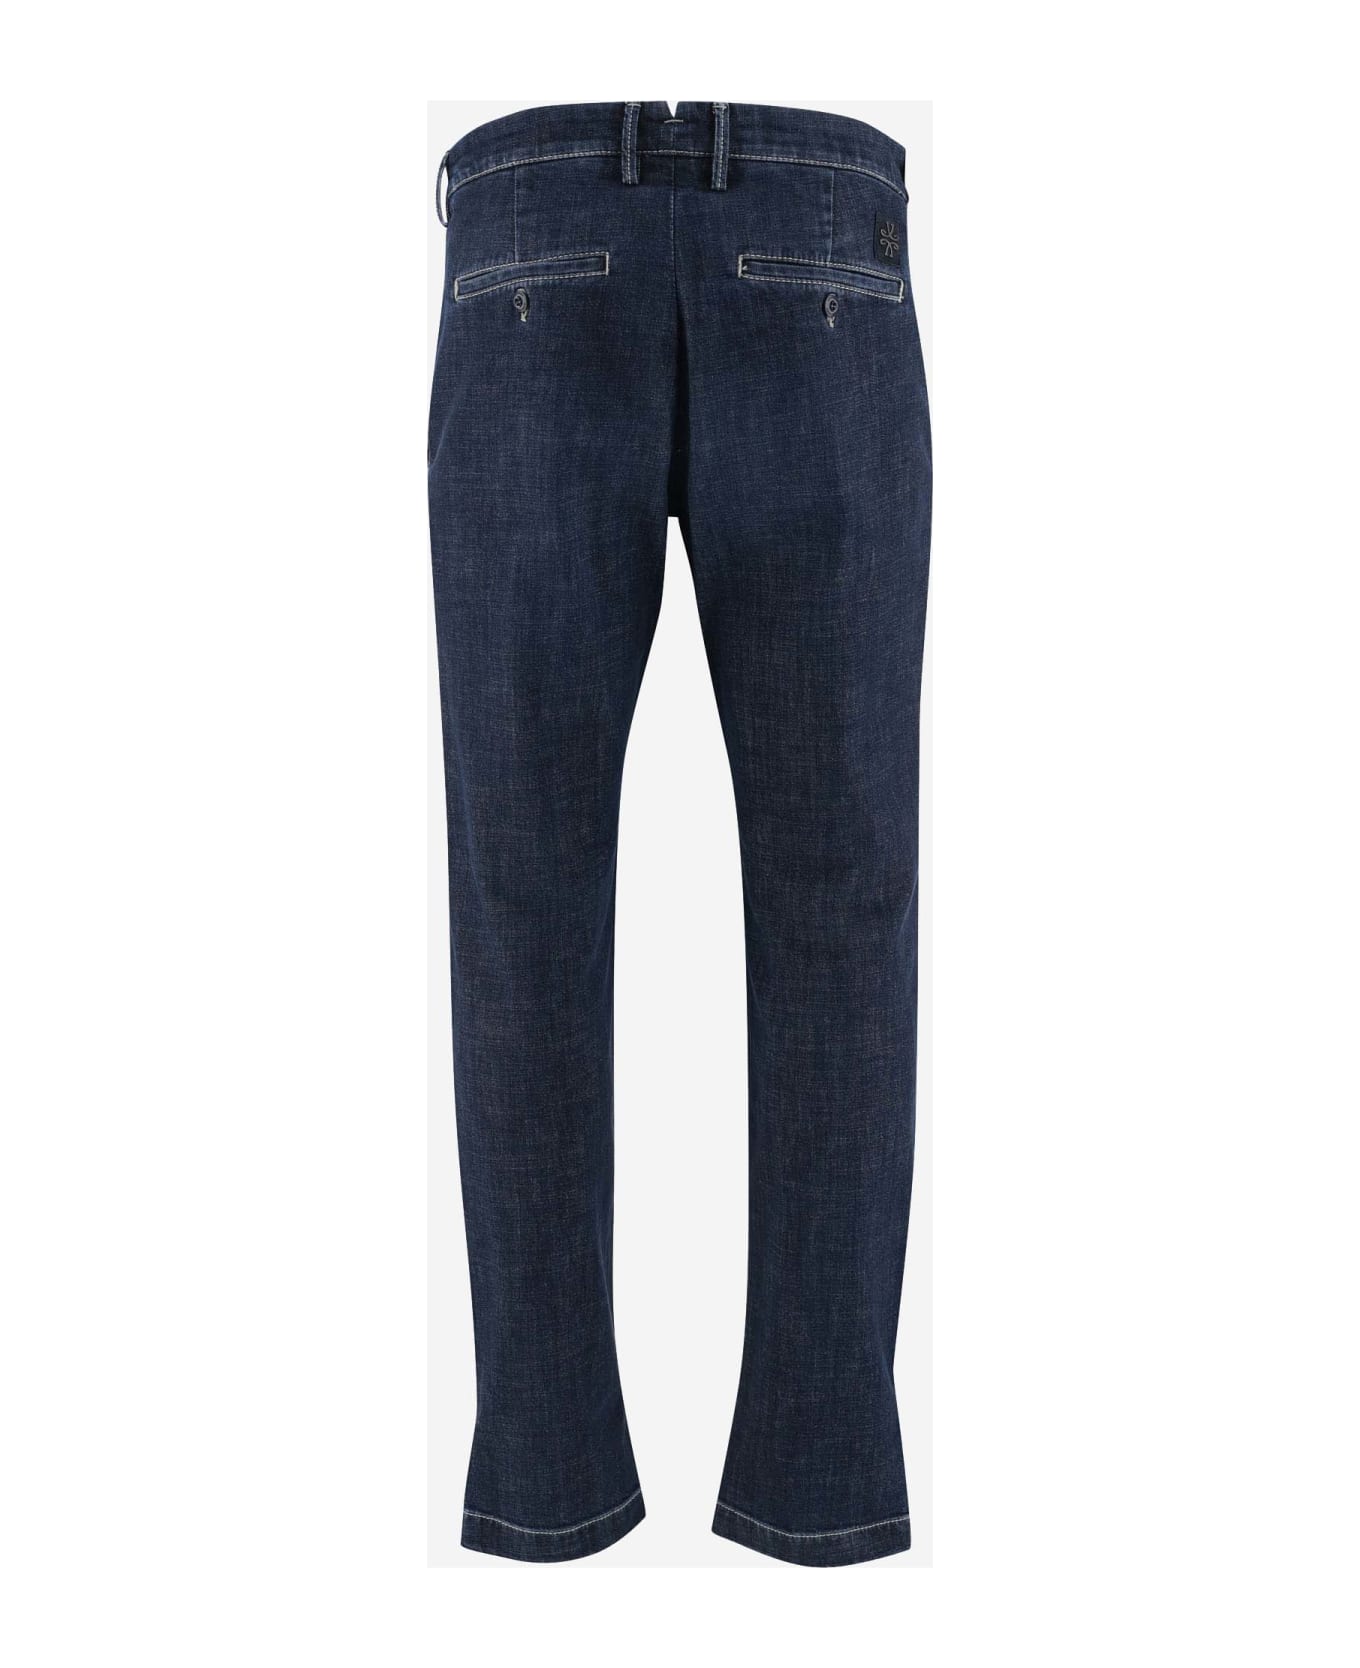 Jacob Cohen Stretch Cotton Denim Jeans Jeans - BLU デニム